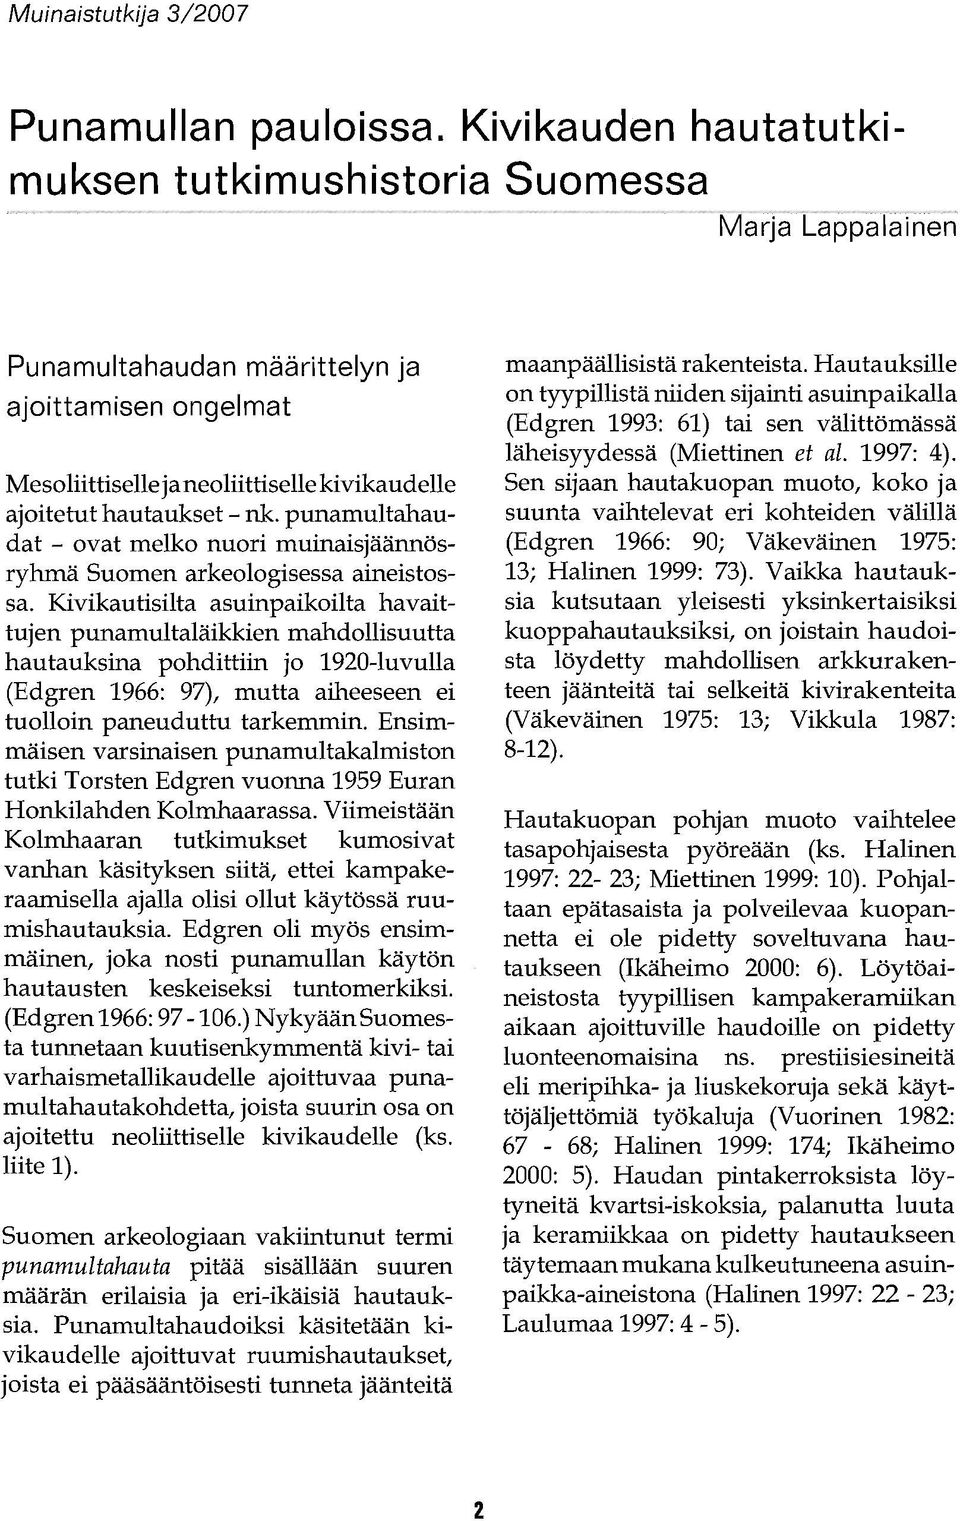 punamultahaudat - ovat melko nuori muinaisjäännösryhmä Suomen arkeologisessa aineistossa.